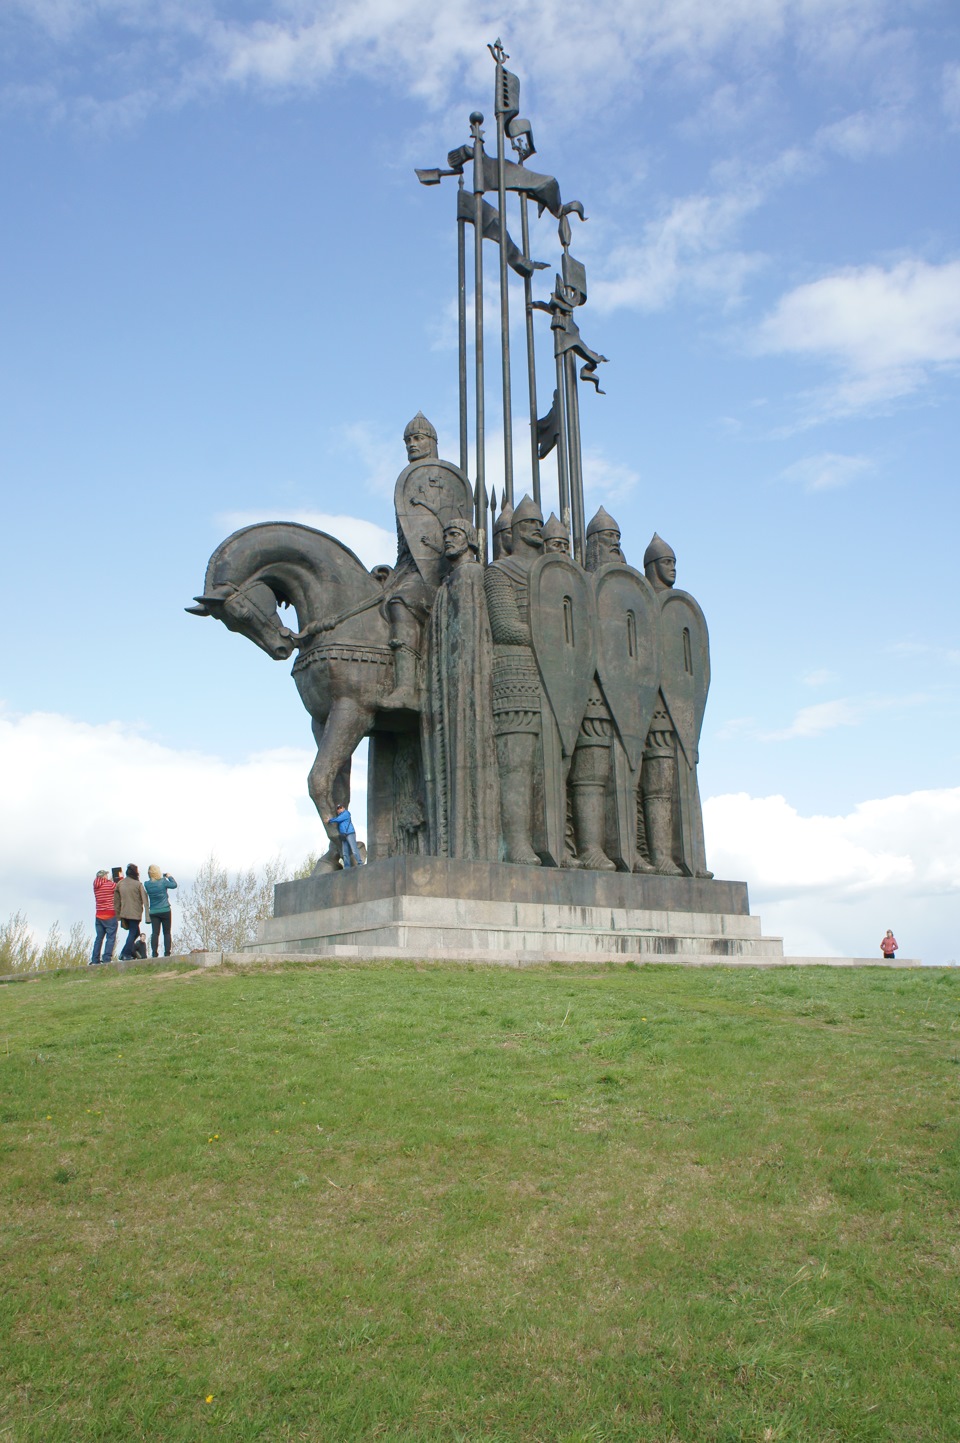 Памятник Александру Невскому в Пскове